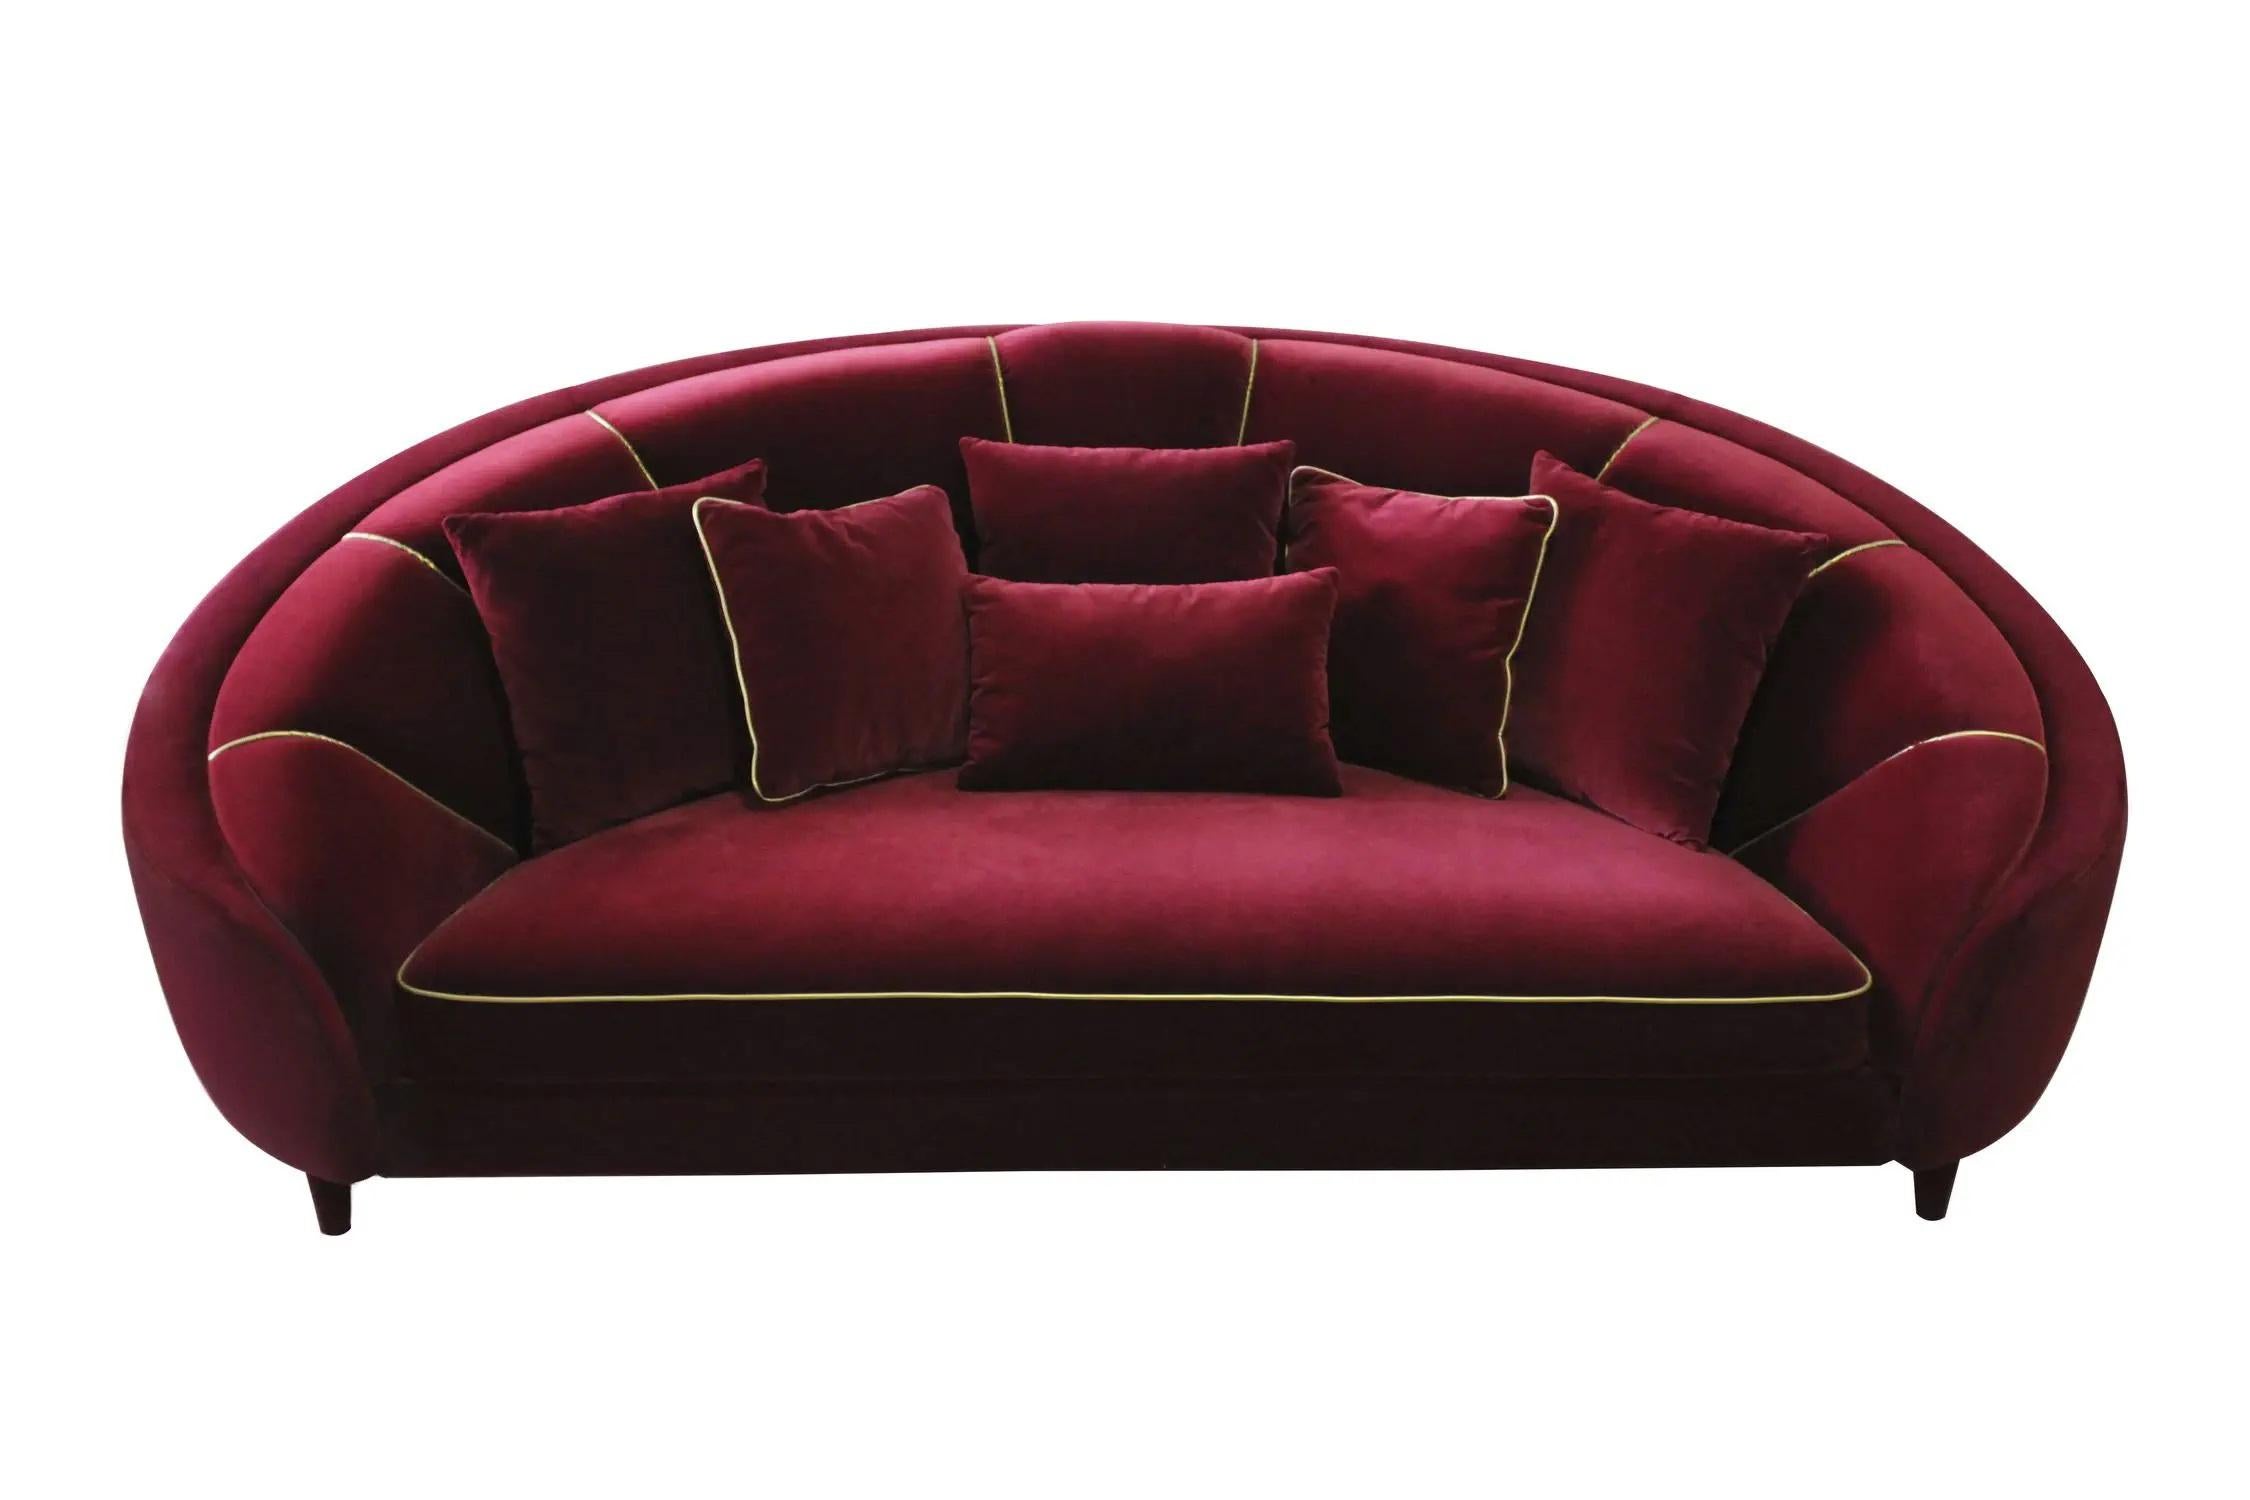 Handgefertigtes, geschwungenes Sofa, inspiriert vom luxuriösen Art-Déco-Stil, mit fließenden Kurven und detaillierten goldenen Paspeln, die eine zarte Note verleihen. 
Setzen Sie sich mit uns in Verbindung, um sich über die COM/COL-Produktion, die